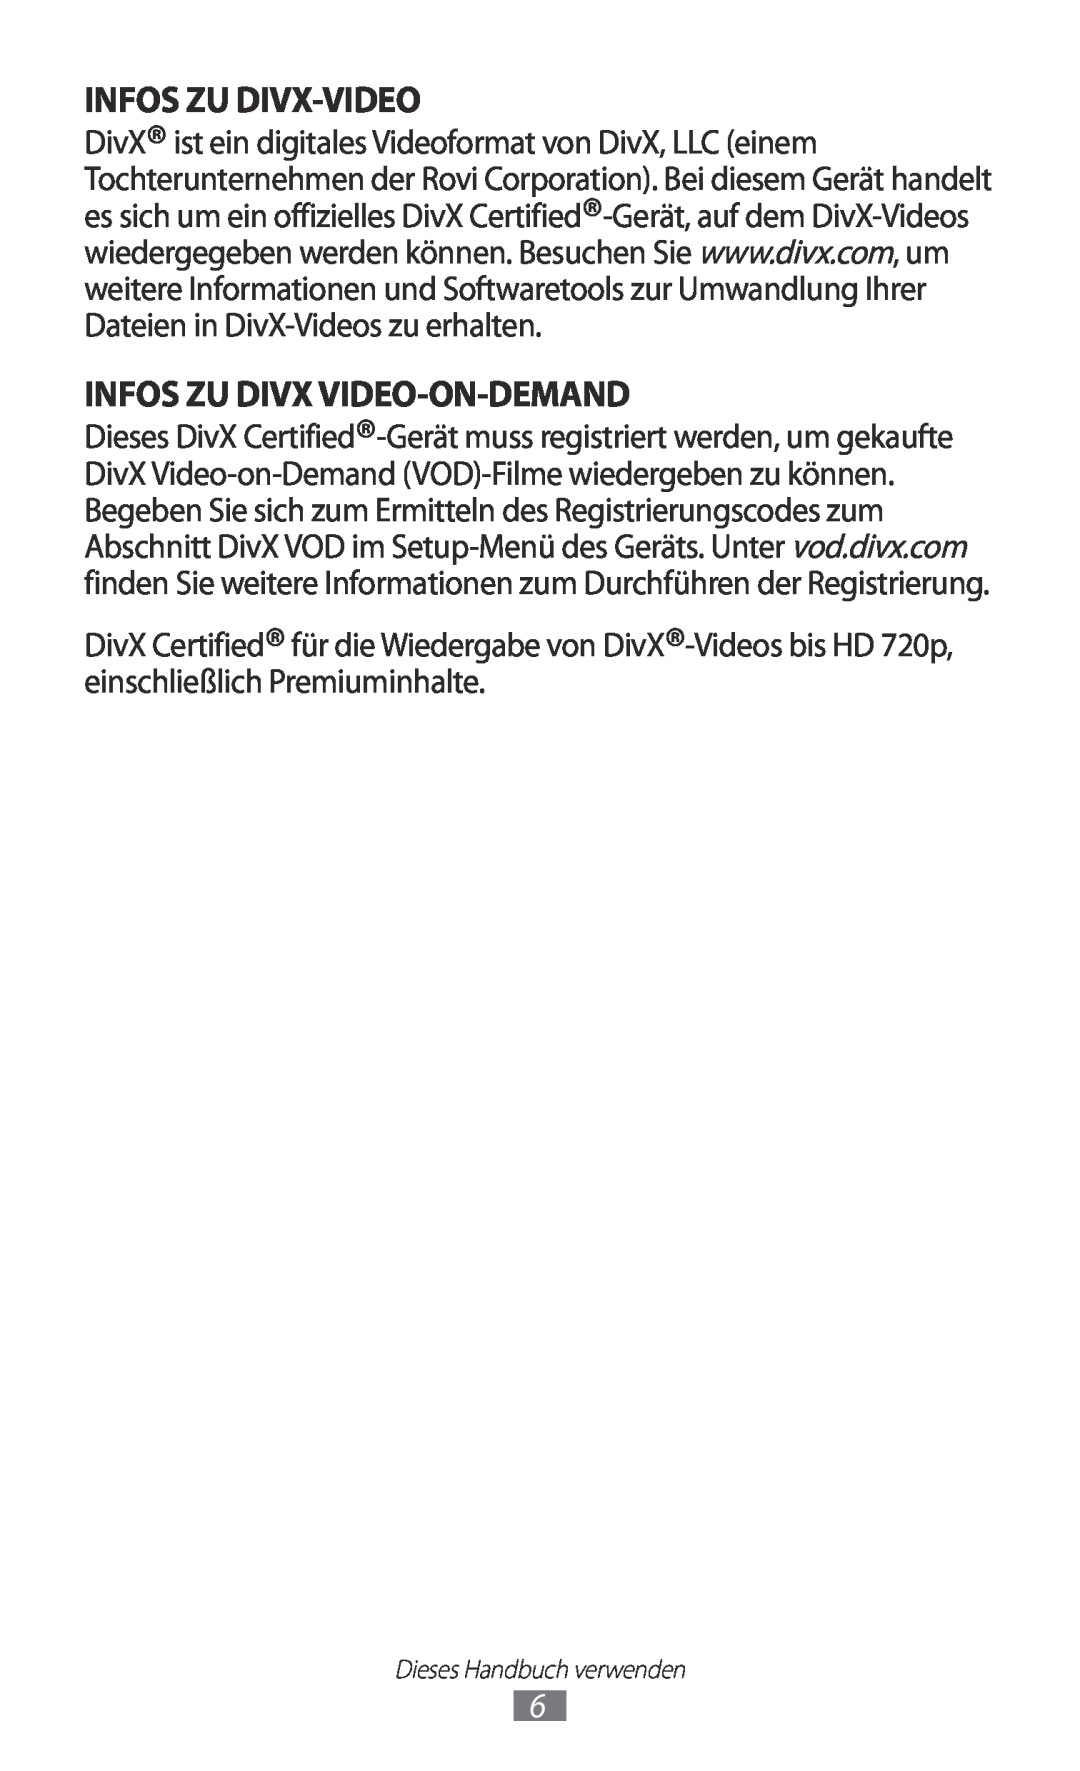 Samsung GT-P5100TSAEUR, GT-P5100ZWEATO, GT-P5100ZWAVD2, GT-P5100TSEAUT Infos Zu Divx-Video, Infos Zu Divx Video-On-Demand 